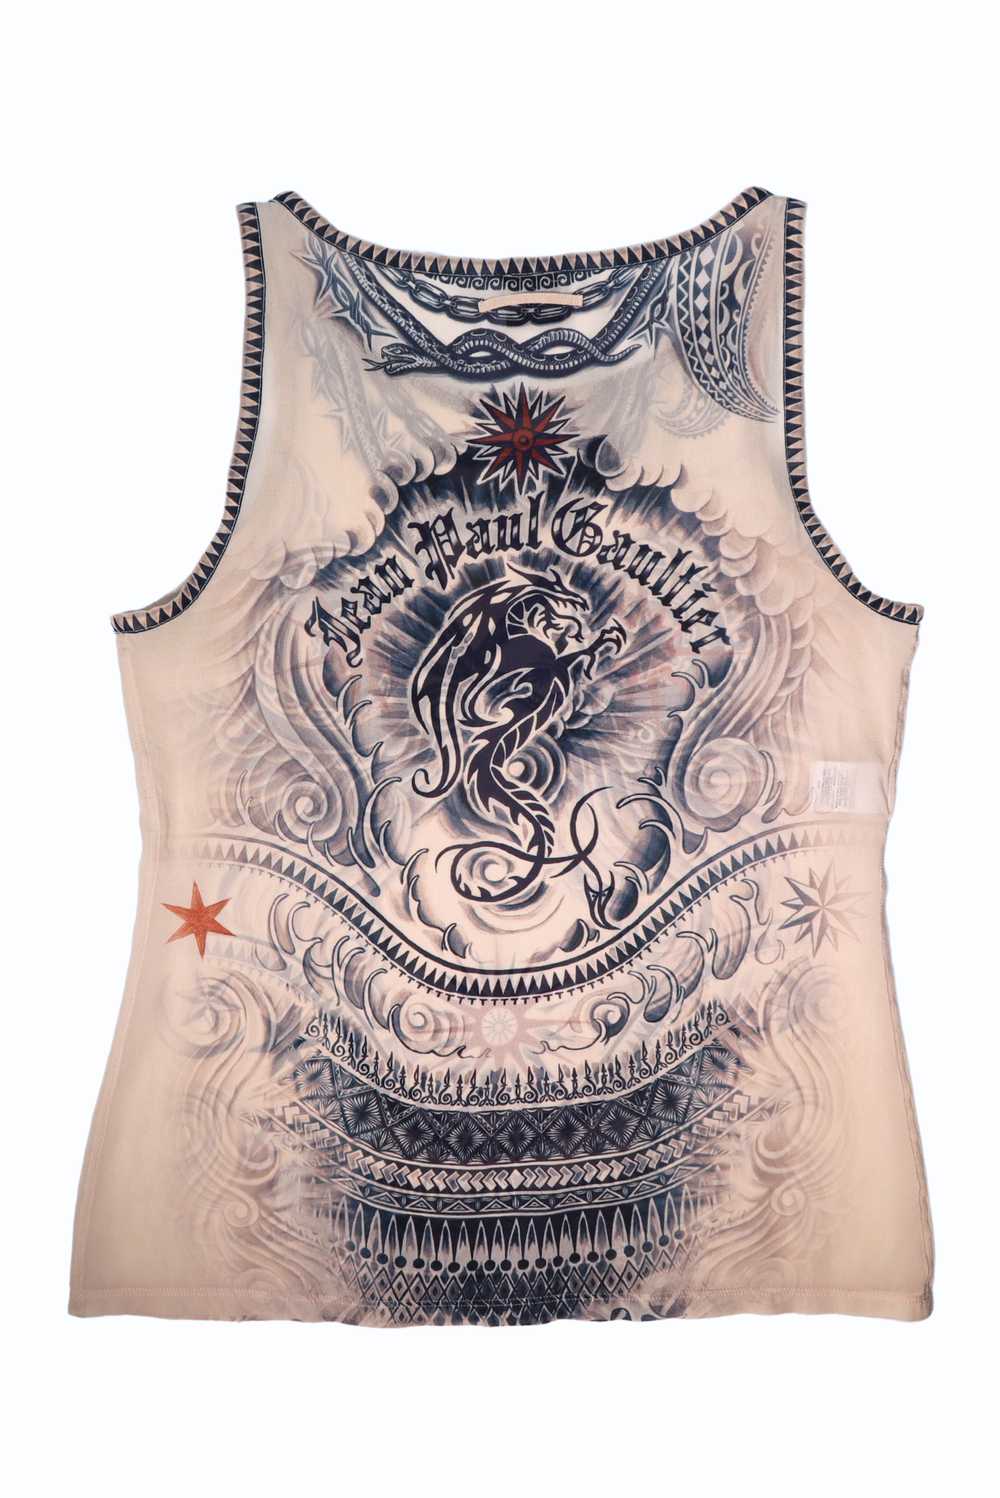 Jean Paul Gaultier Sun Tattoo Tank Top - image 2